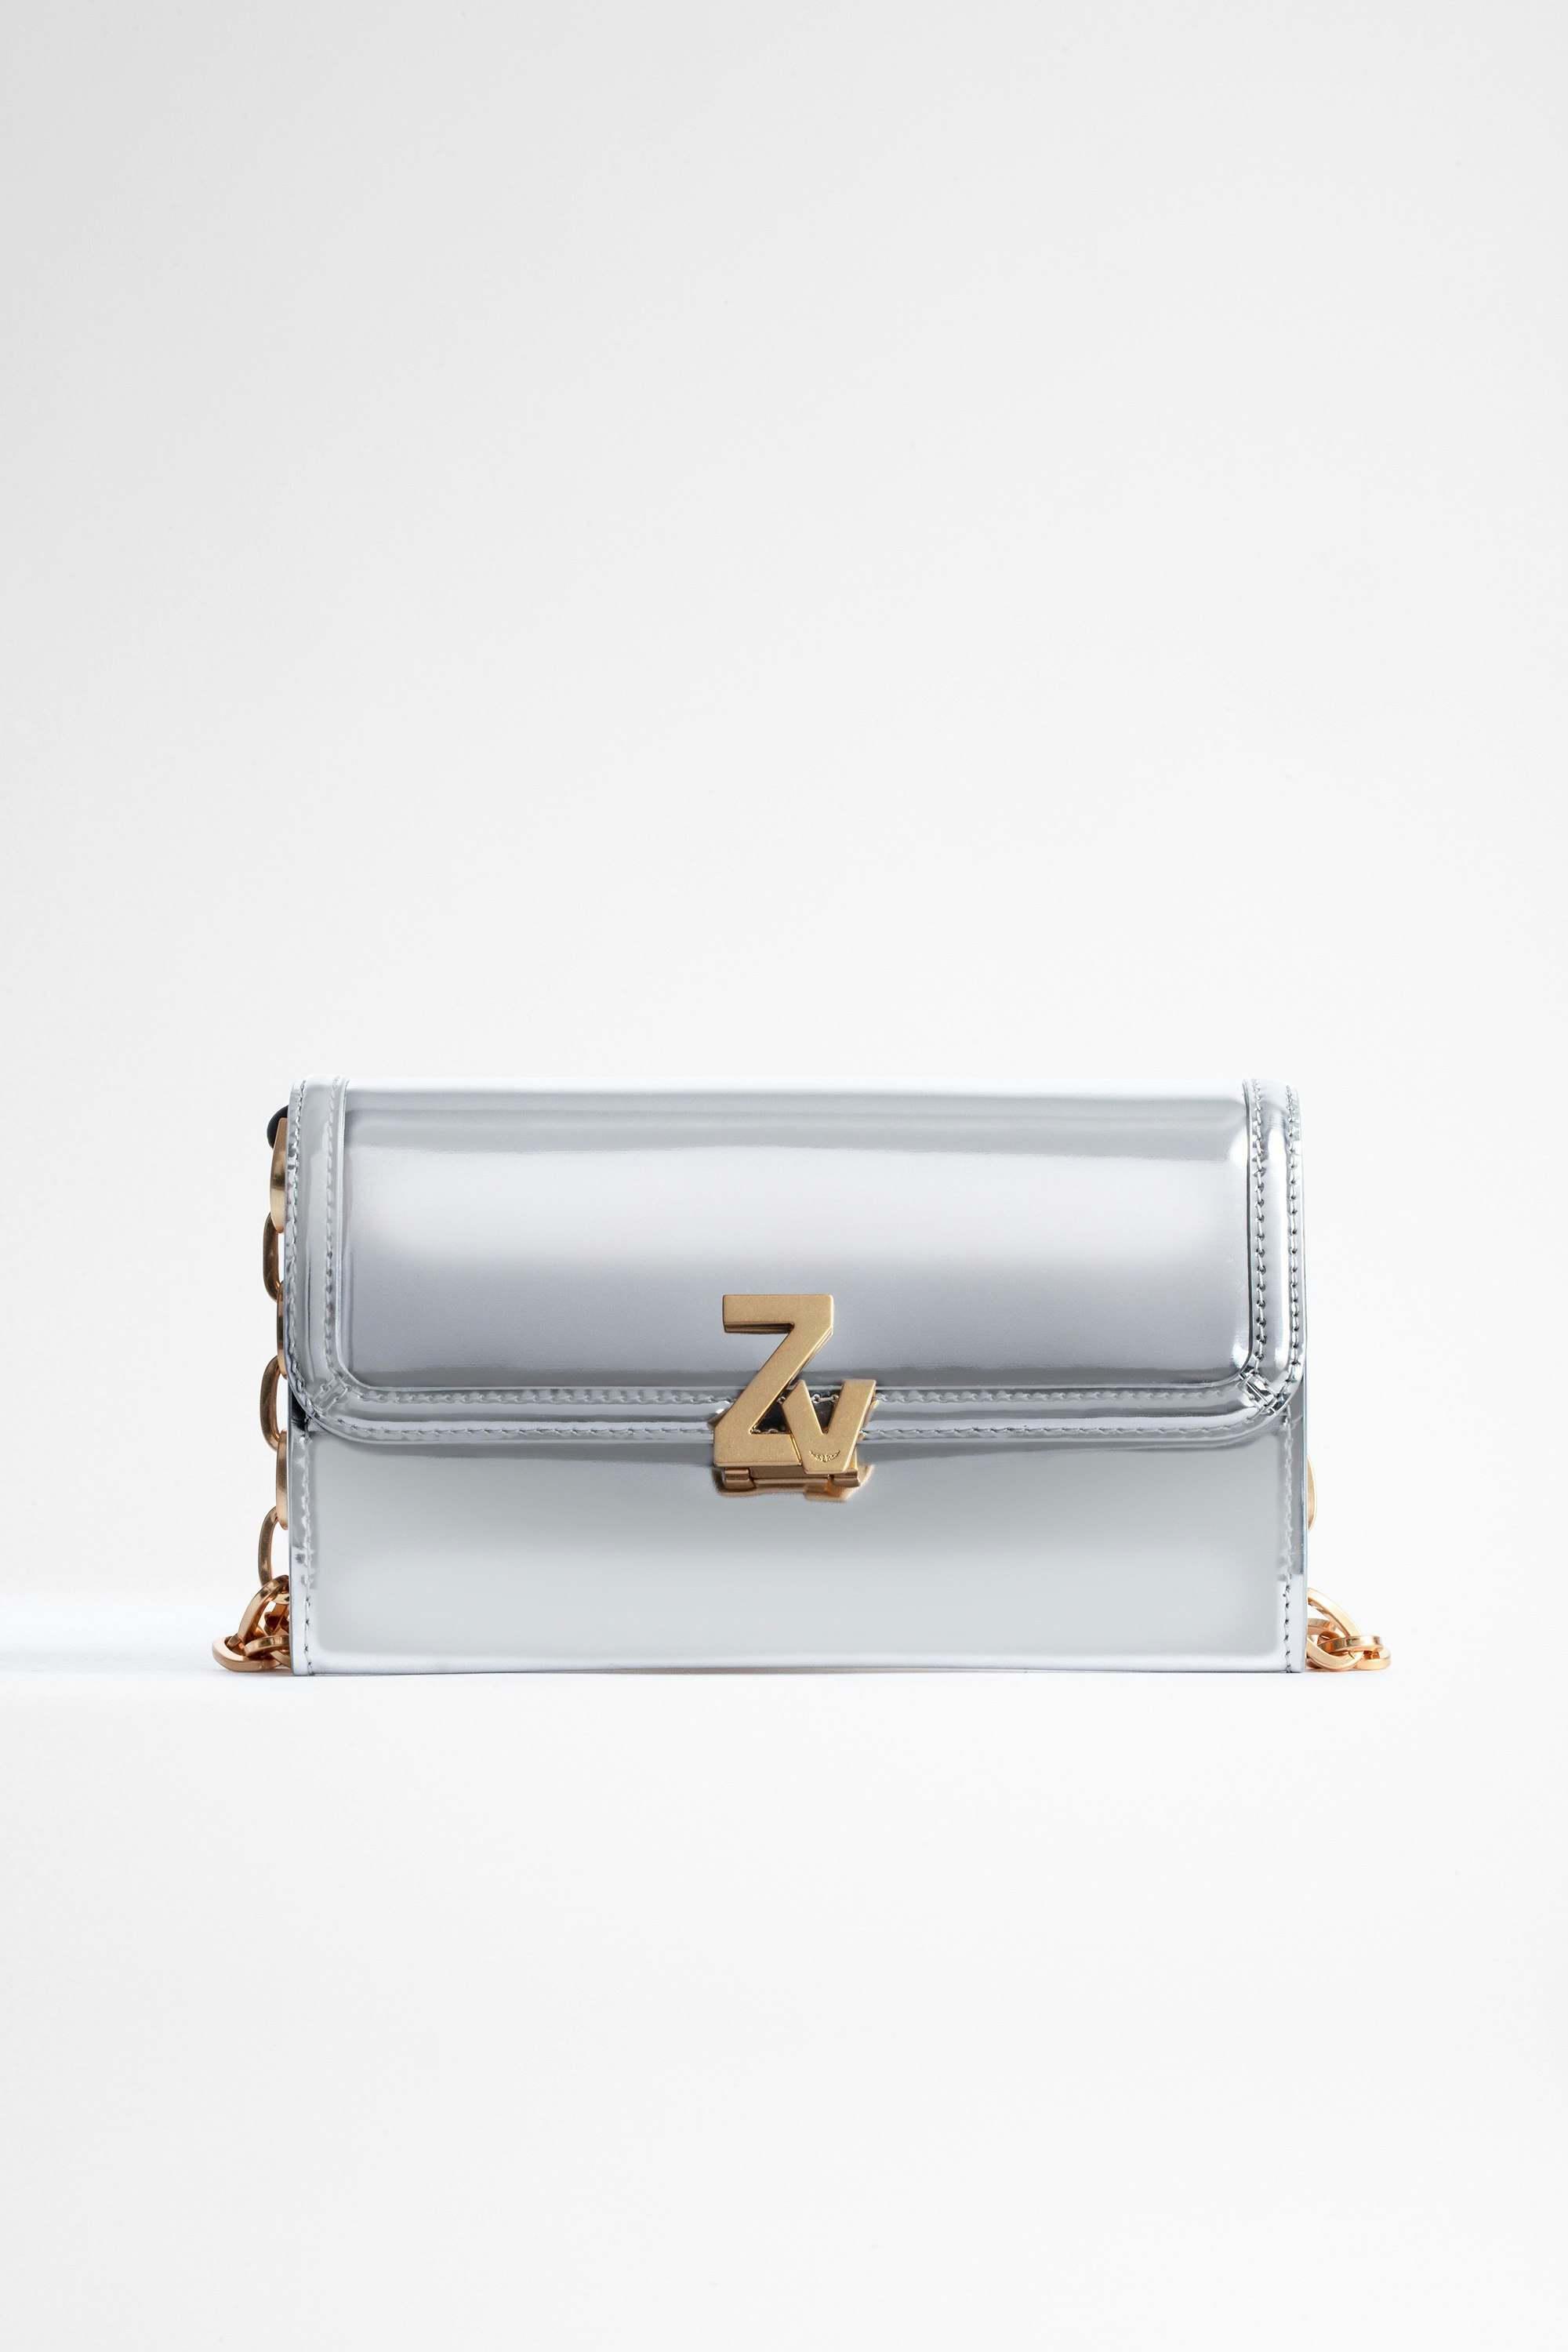 ZV Initiale Le Long Unchained Wallet-Style Clutch Women's silver wallet